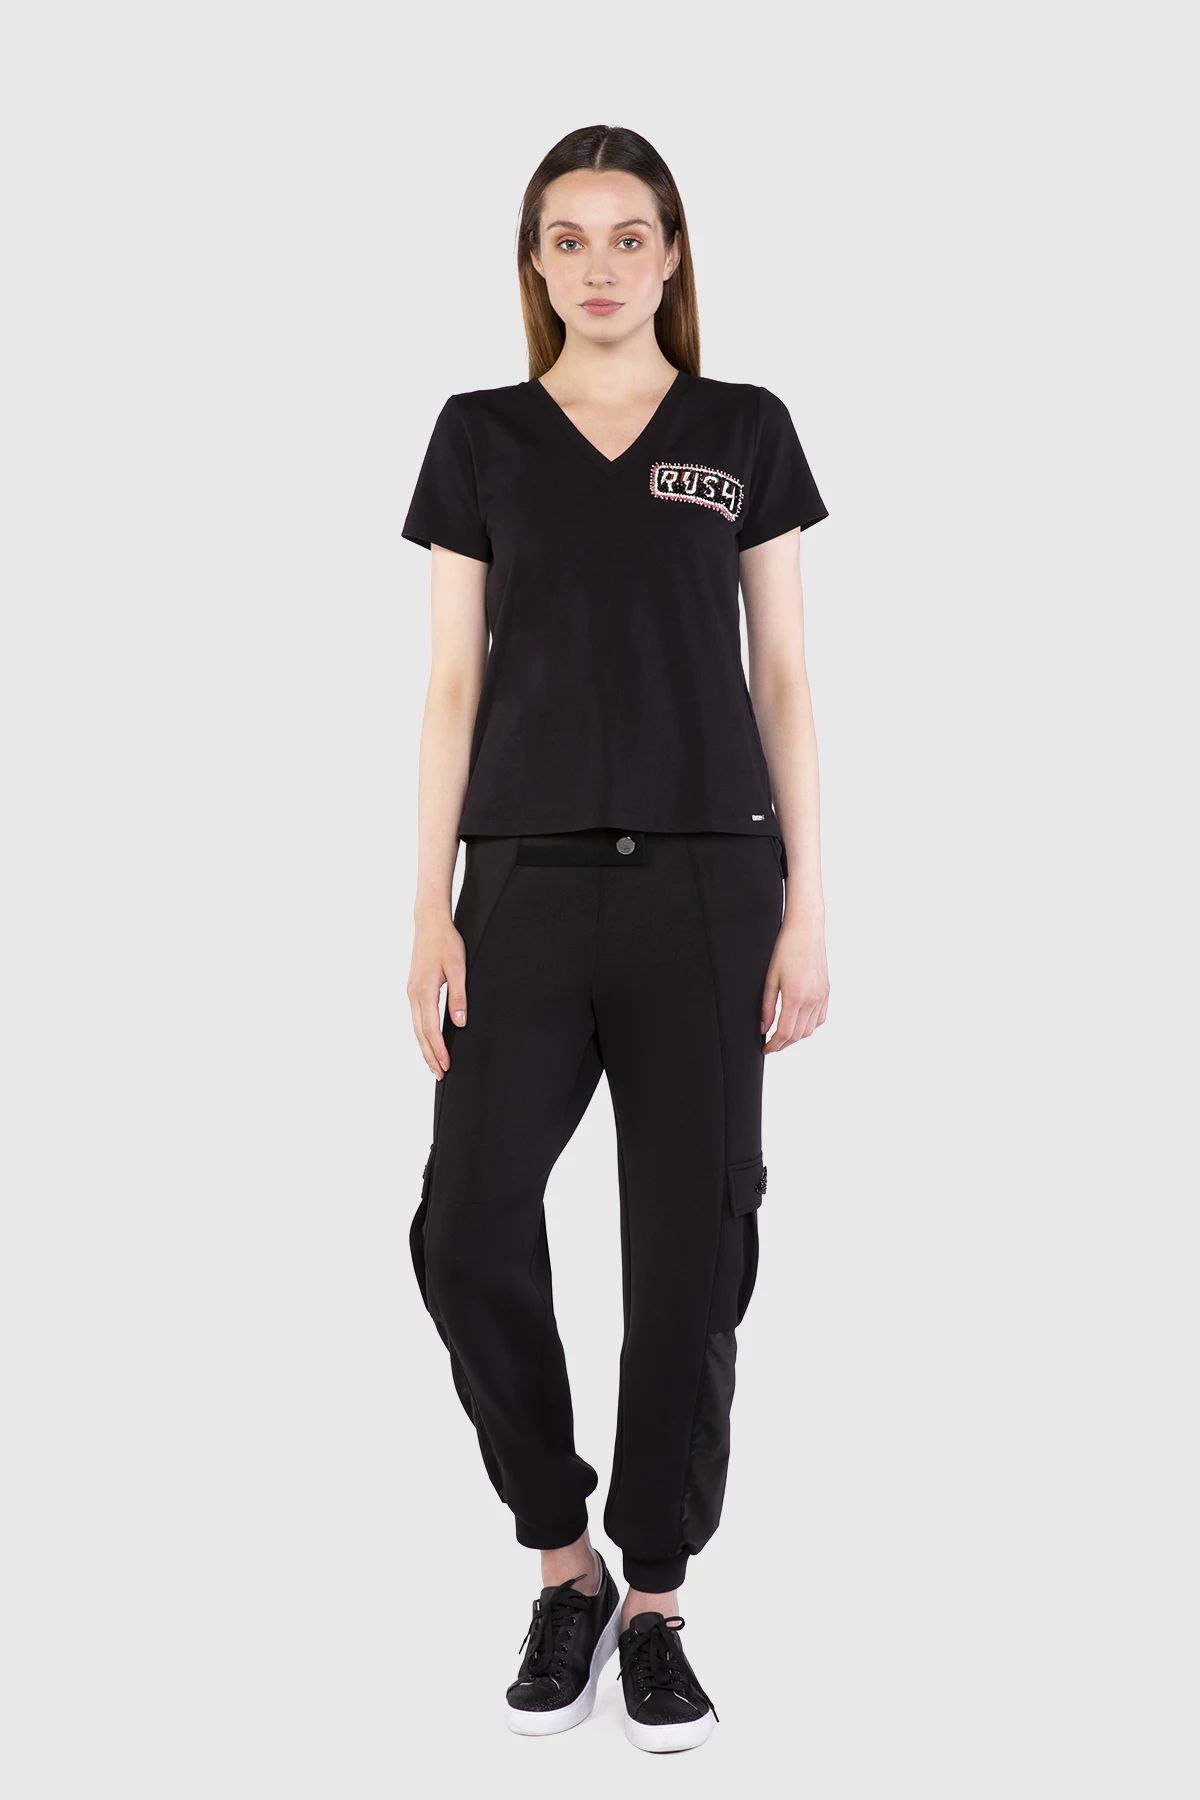  GIZIA - Embroidered Rim Detail V-Neck Basic Black Tshirt